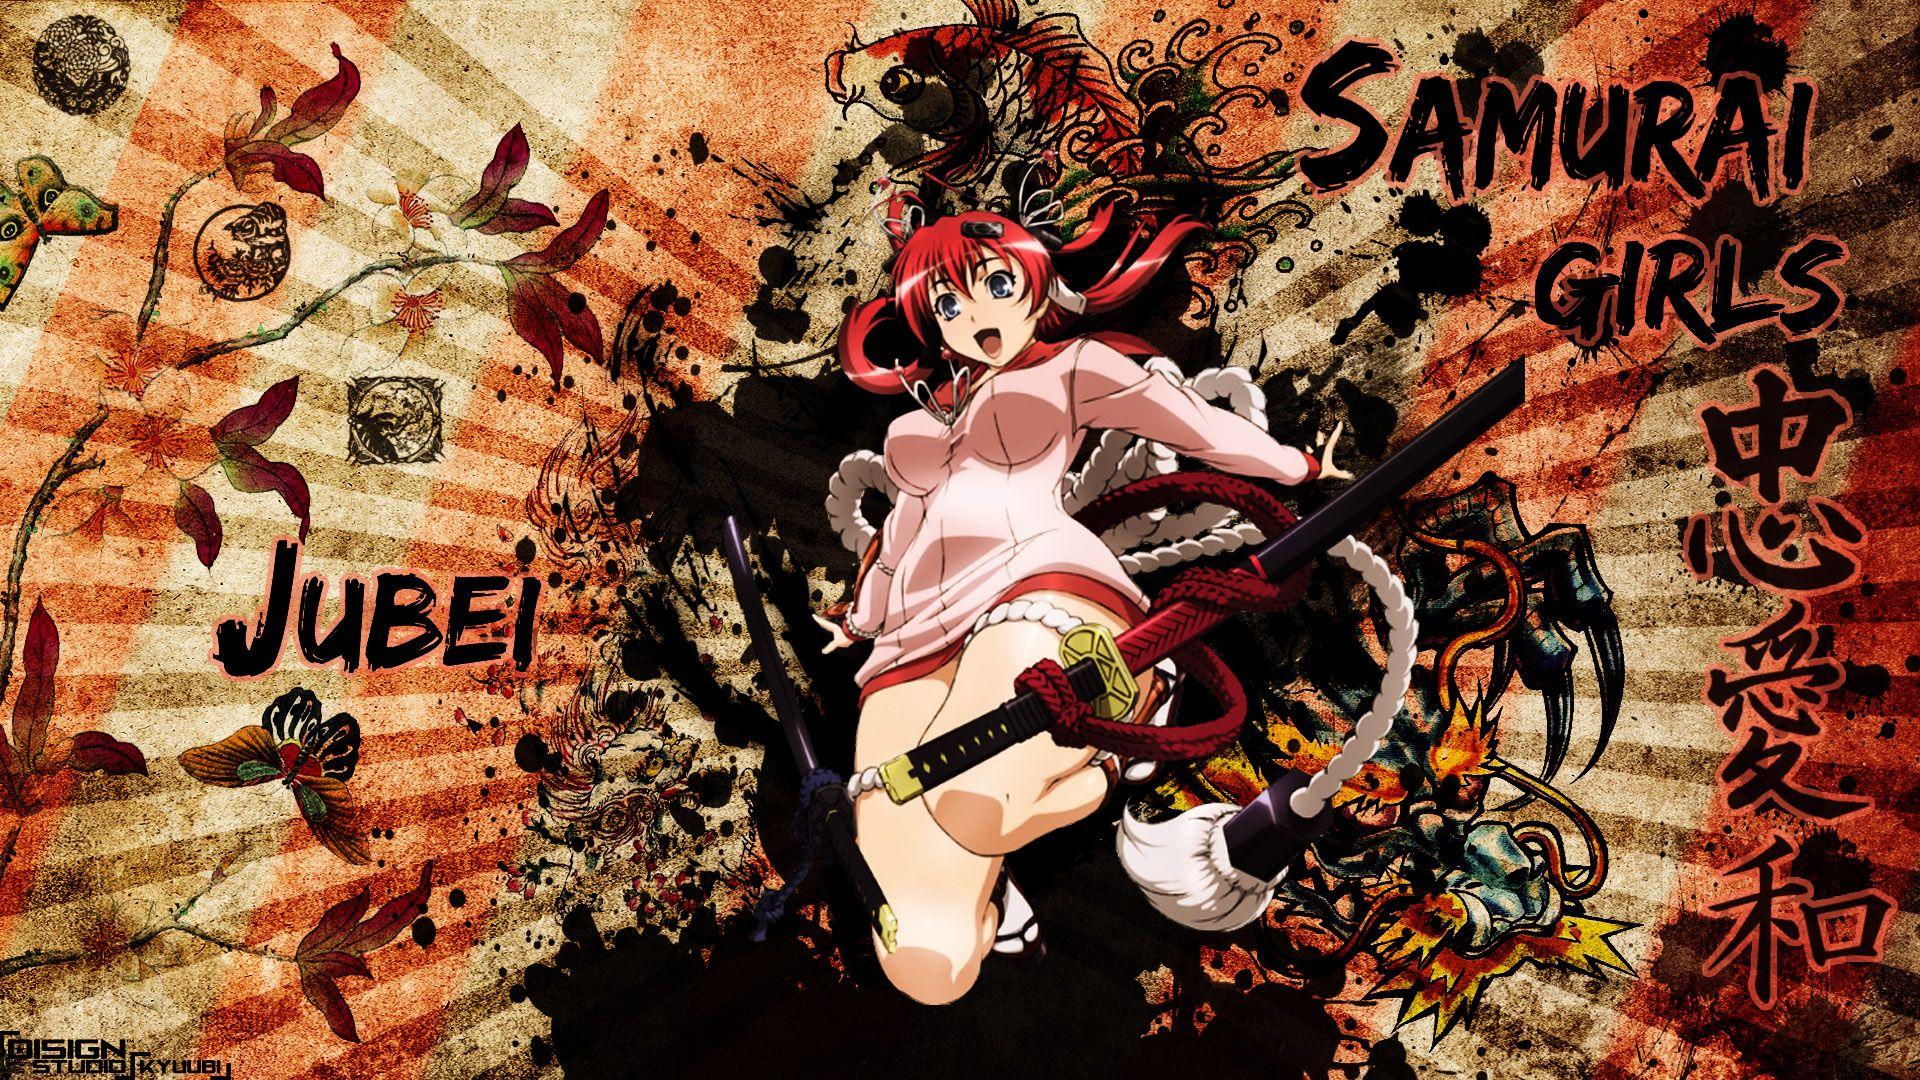 Samurai Anime Girls Wallpaper